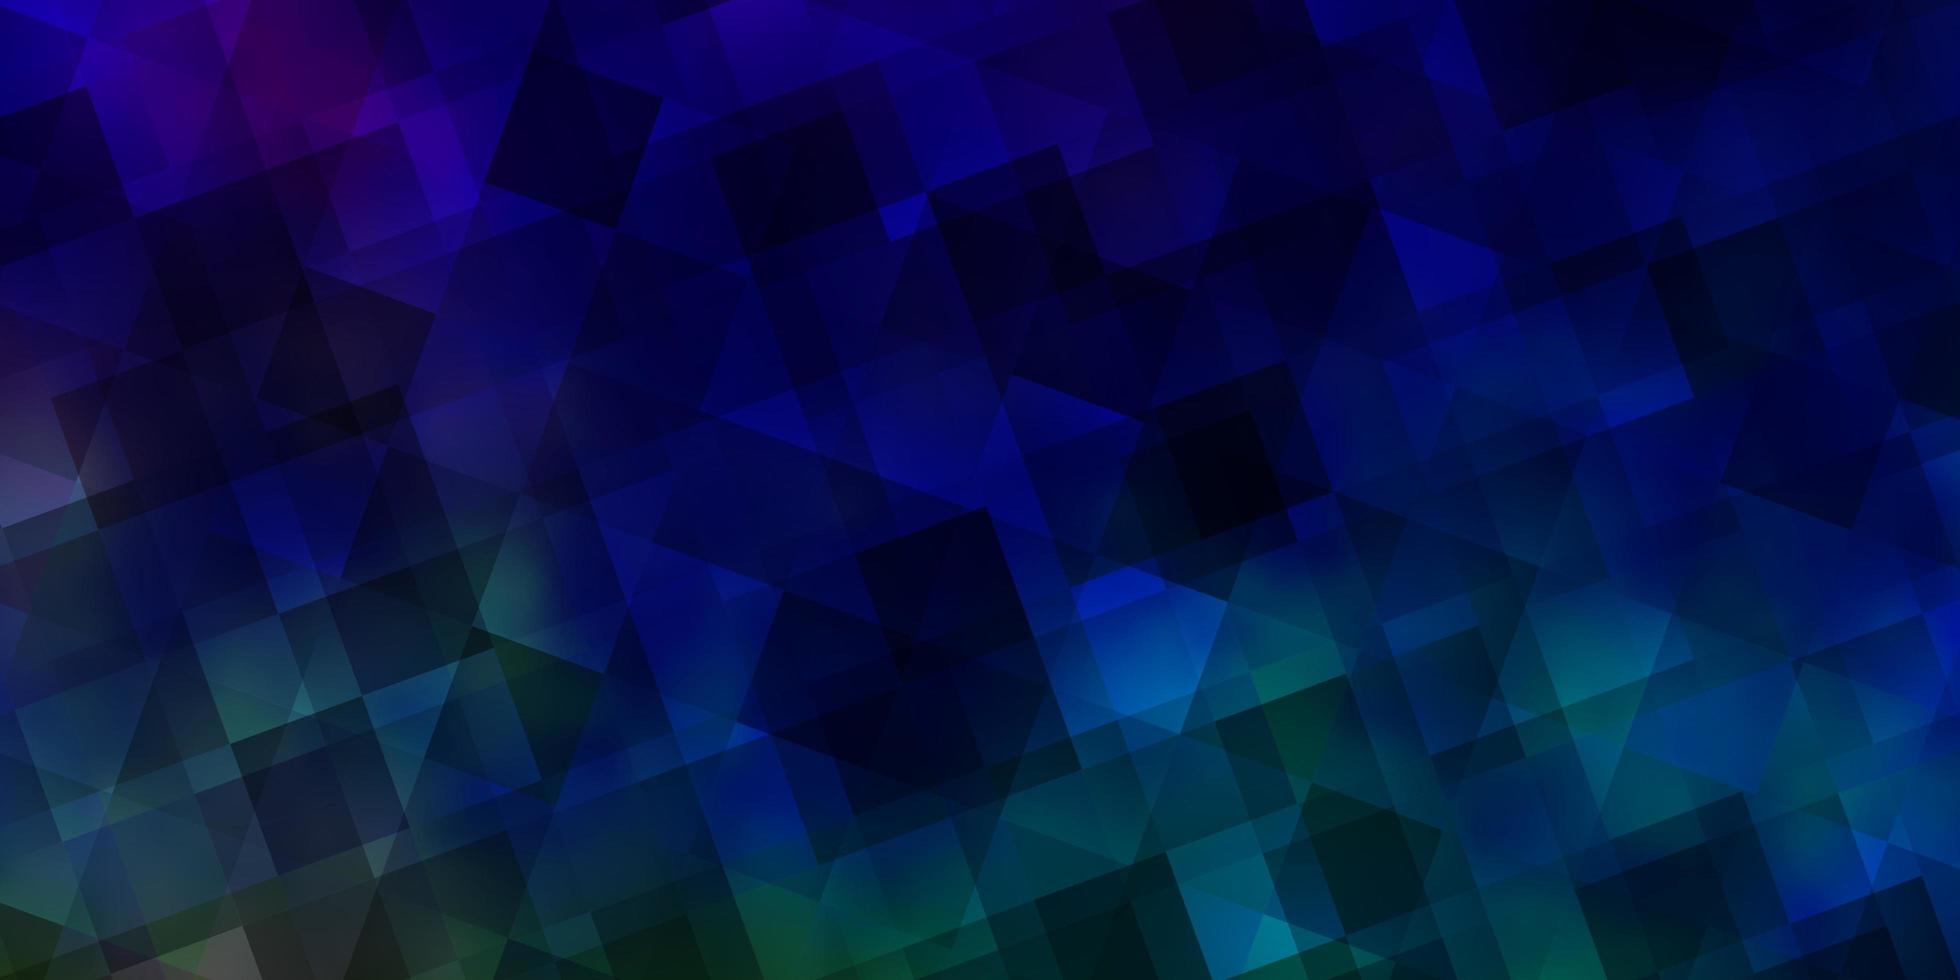 sfondo vettoriale multicolore chiaro con stile poligonale.